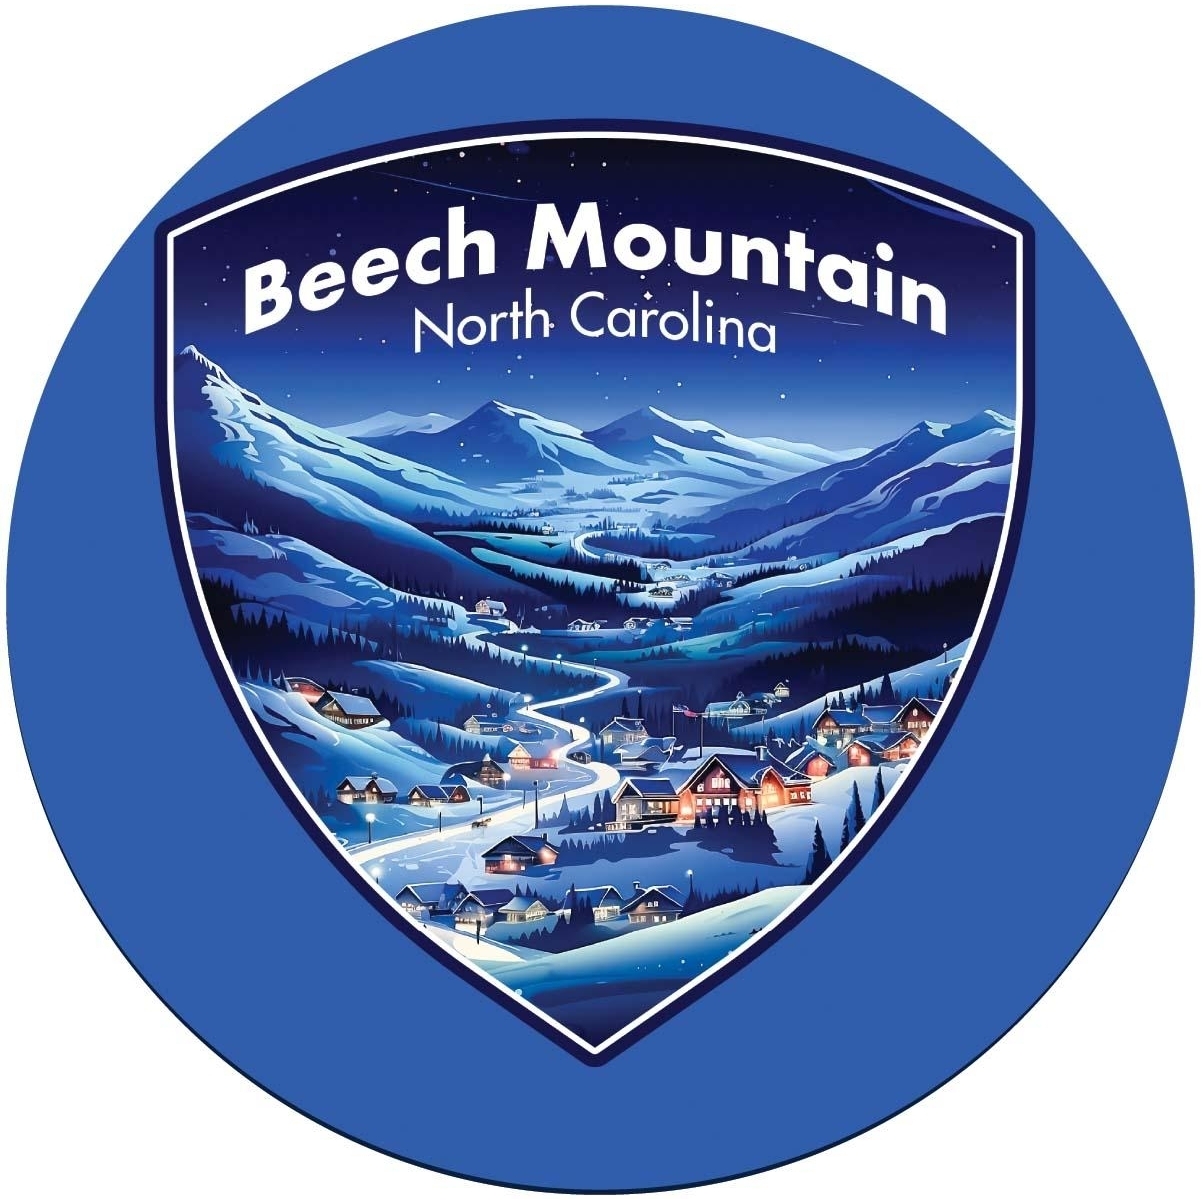 Beech Mountain North Carolina A Souvenir Round Vinyl Decal Sticker - 4-Inch